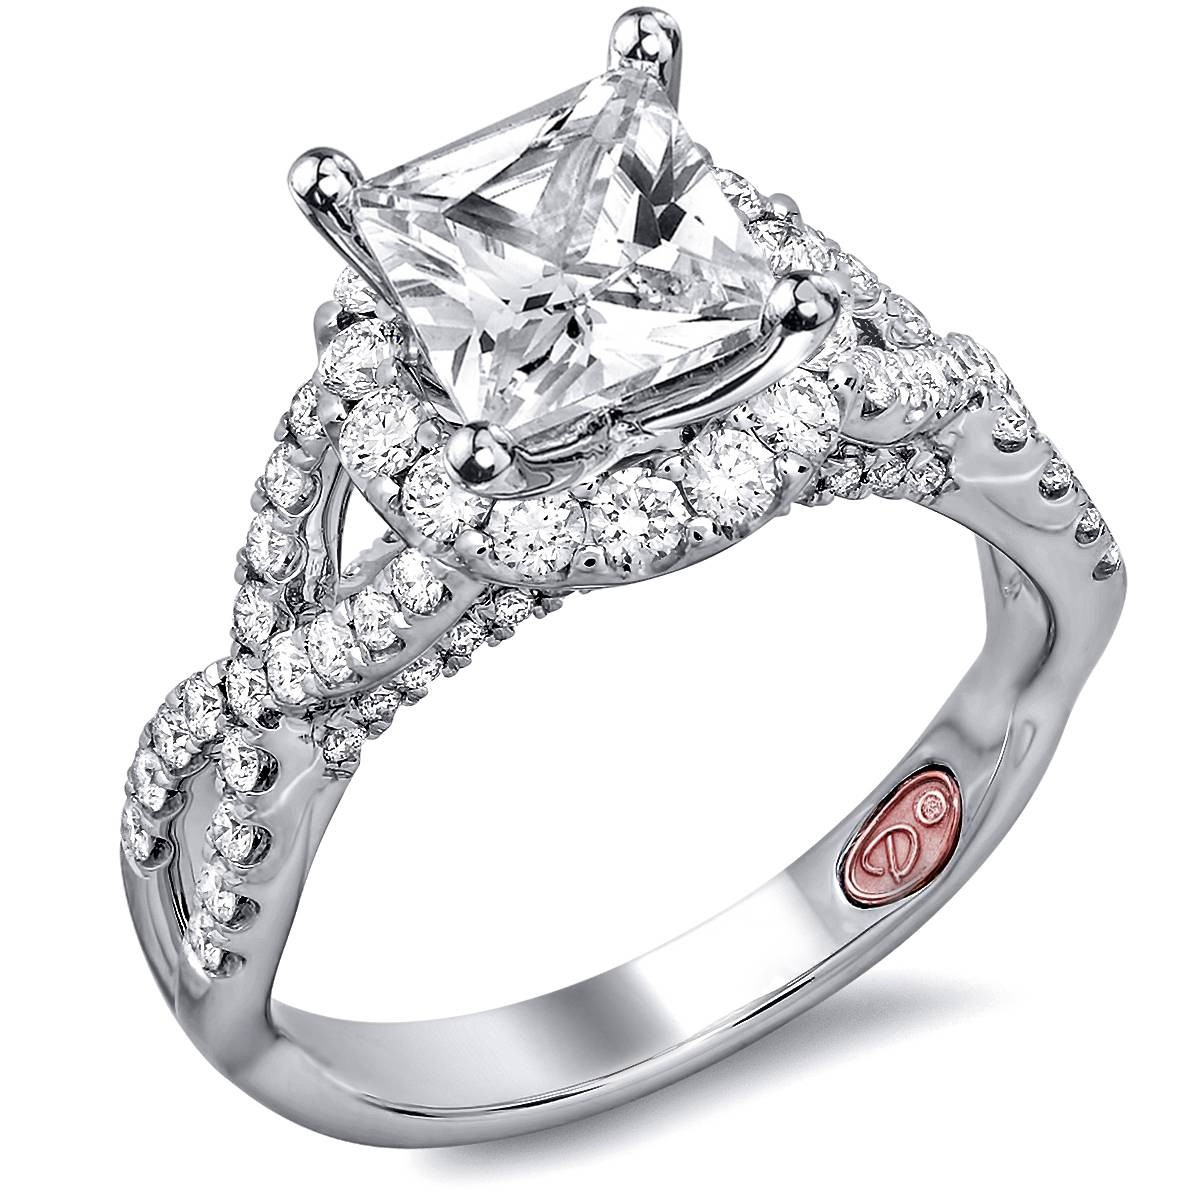 Princess Cut Rings Engagement
 15 Best of Unique Princess Cut Diamond Engagement Rings